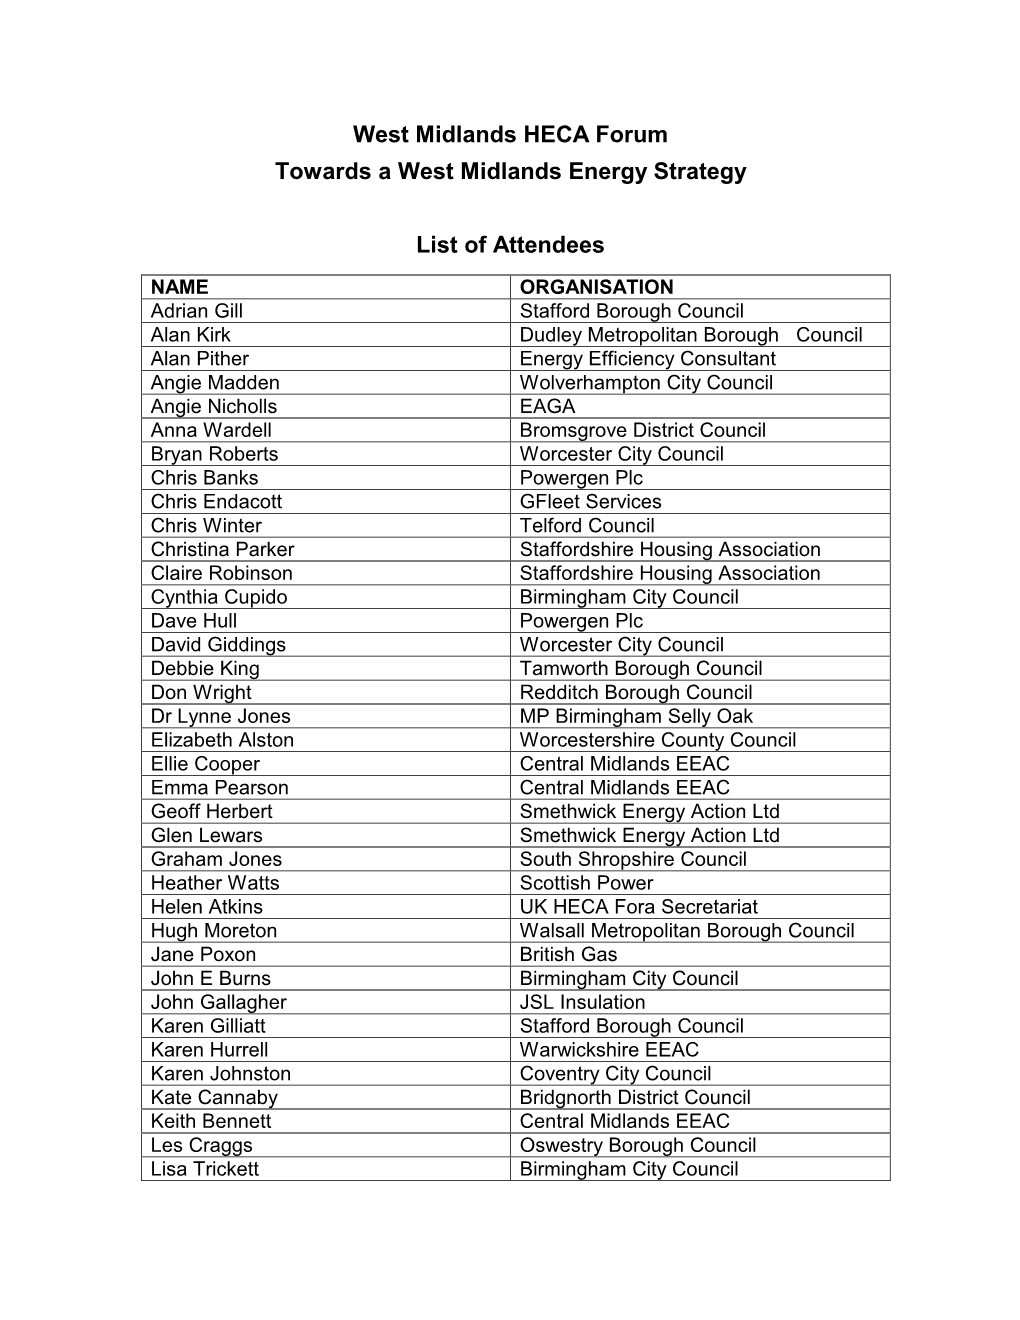 List of Delegates